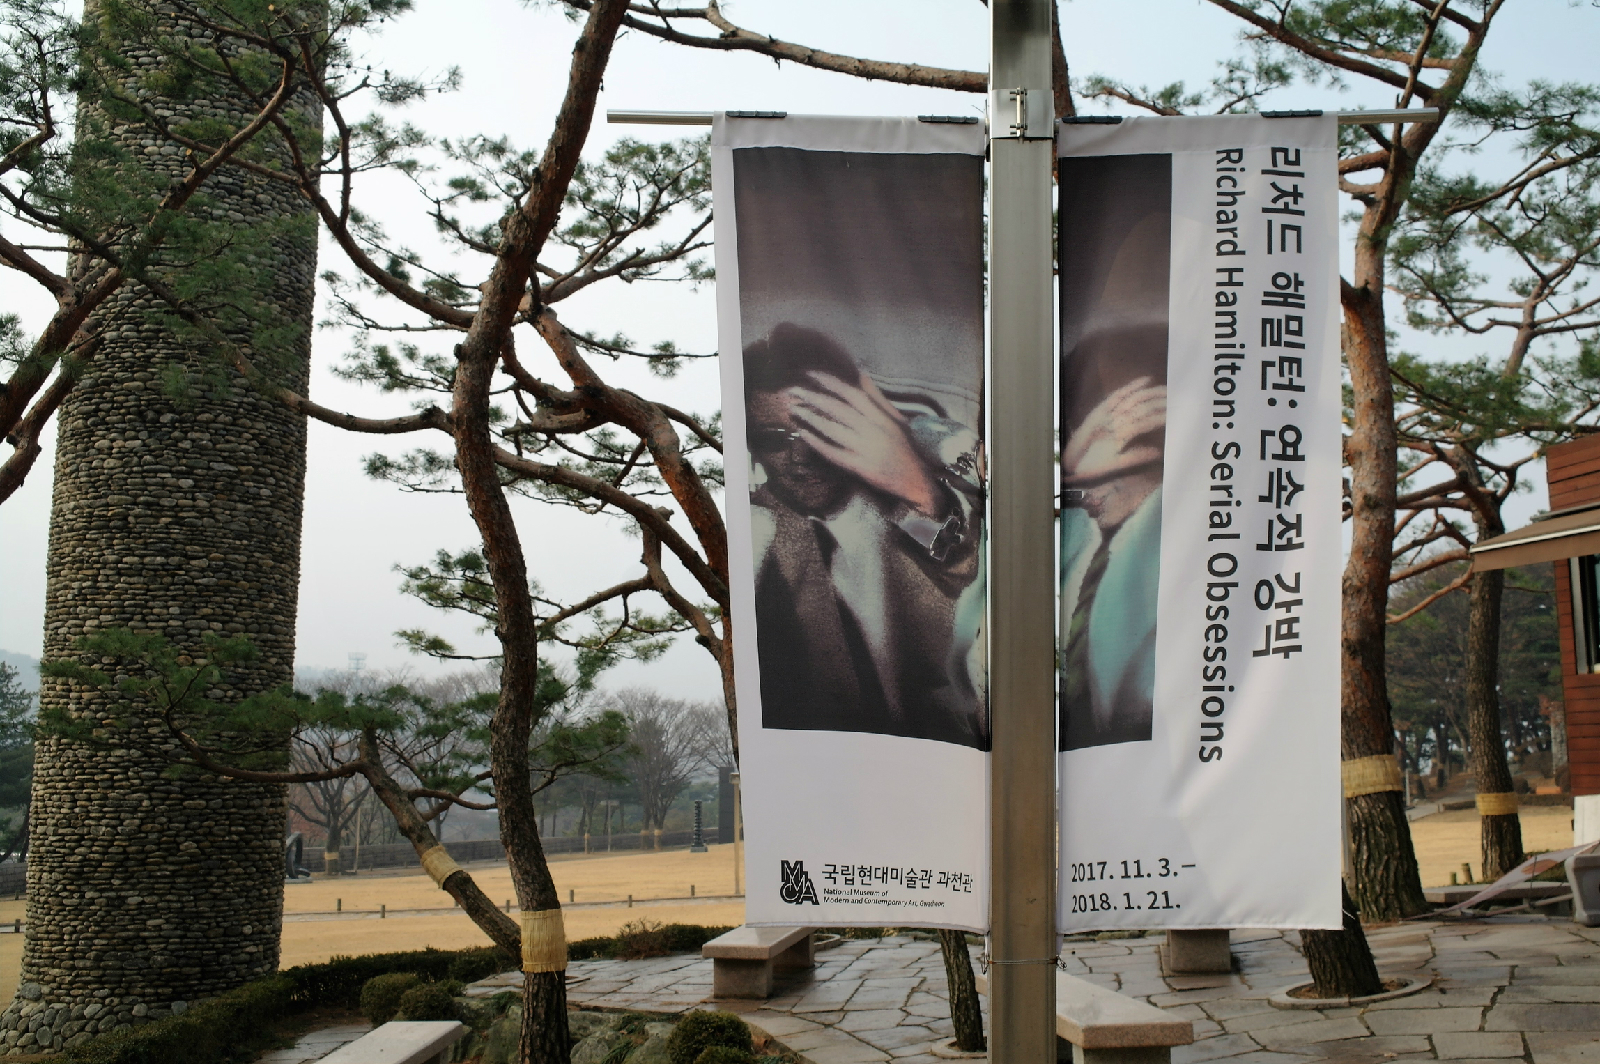 국립현대미술관 과천관에서 1월 21일까지 열리는 <리처드 해밀턴: 연속적 강박 />